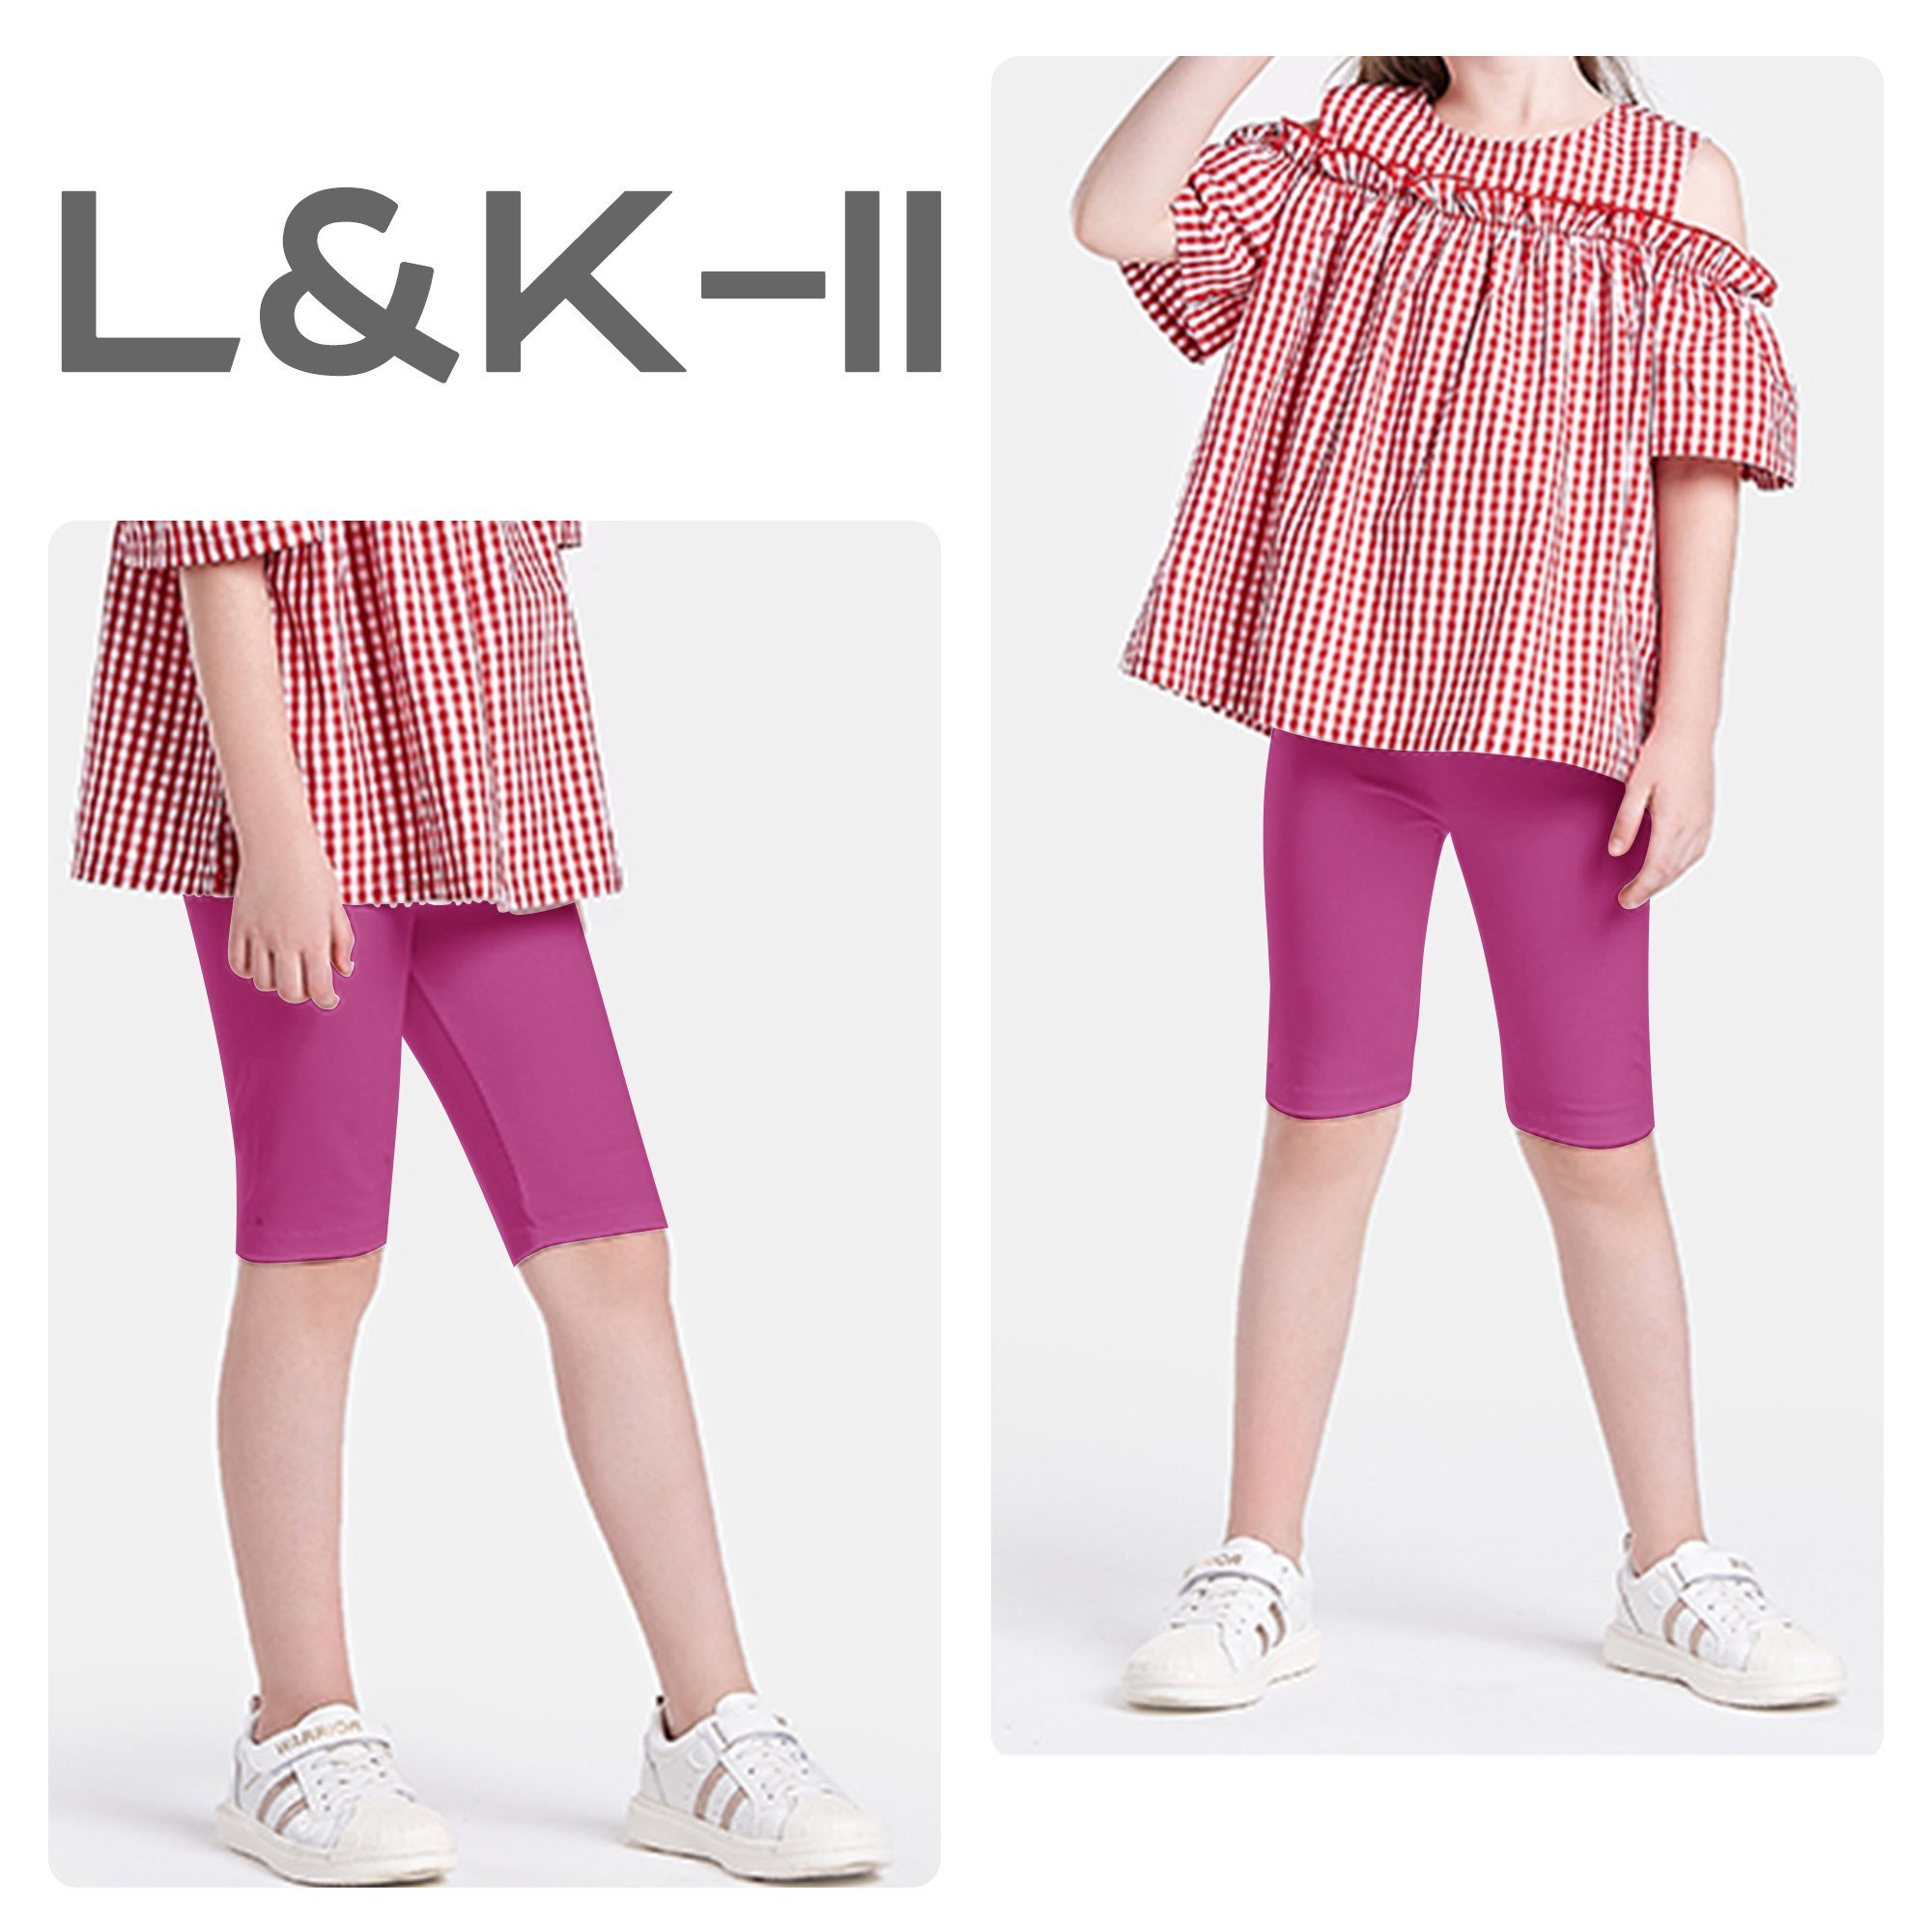 L&K-II Radlerhose 4532-2/3er (2/3er-Pack) Radlerhose Baumwolle Leggings Kurz aus Mädchen Schwarz/Weiß/Grau